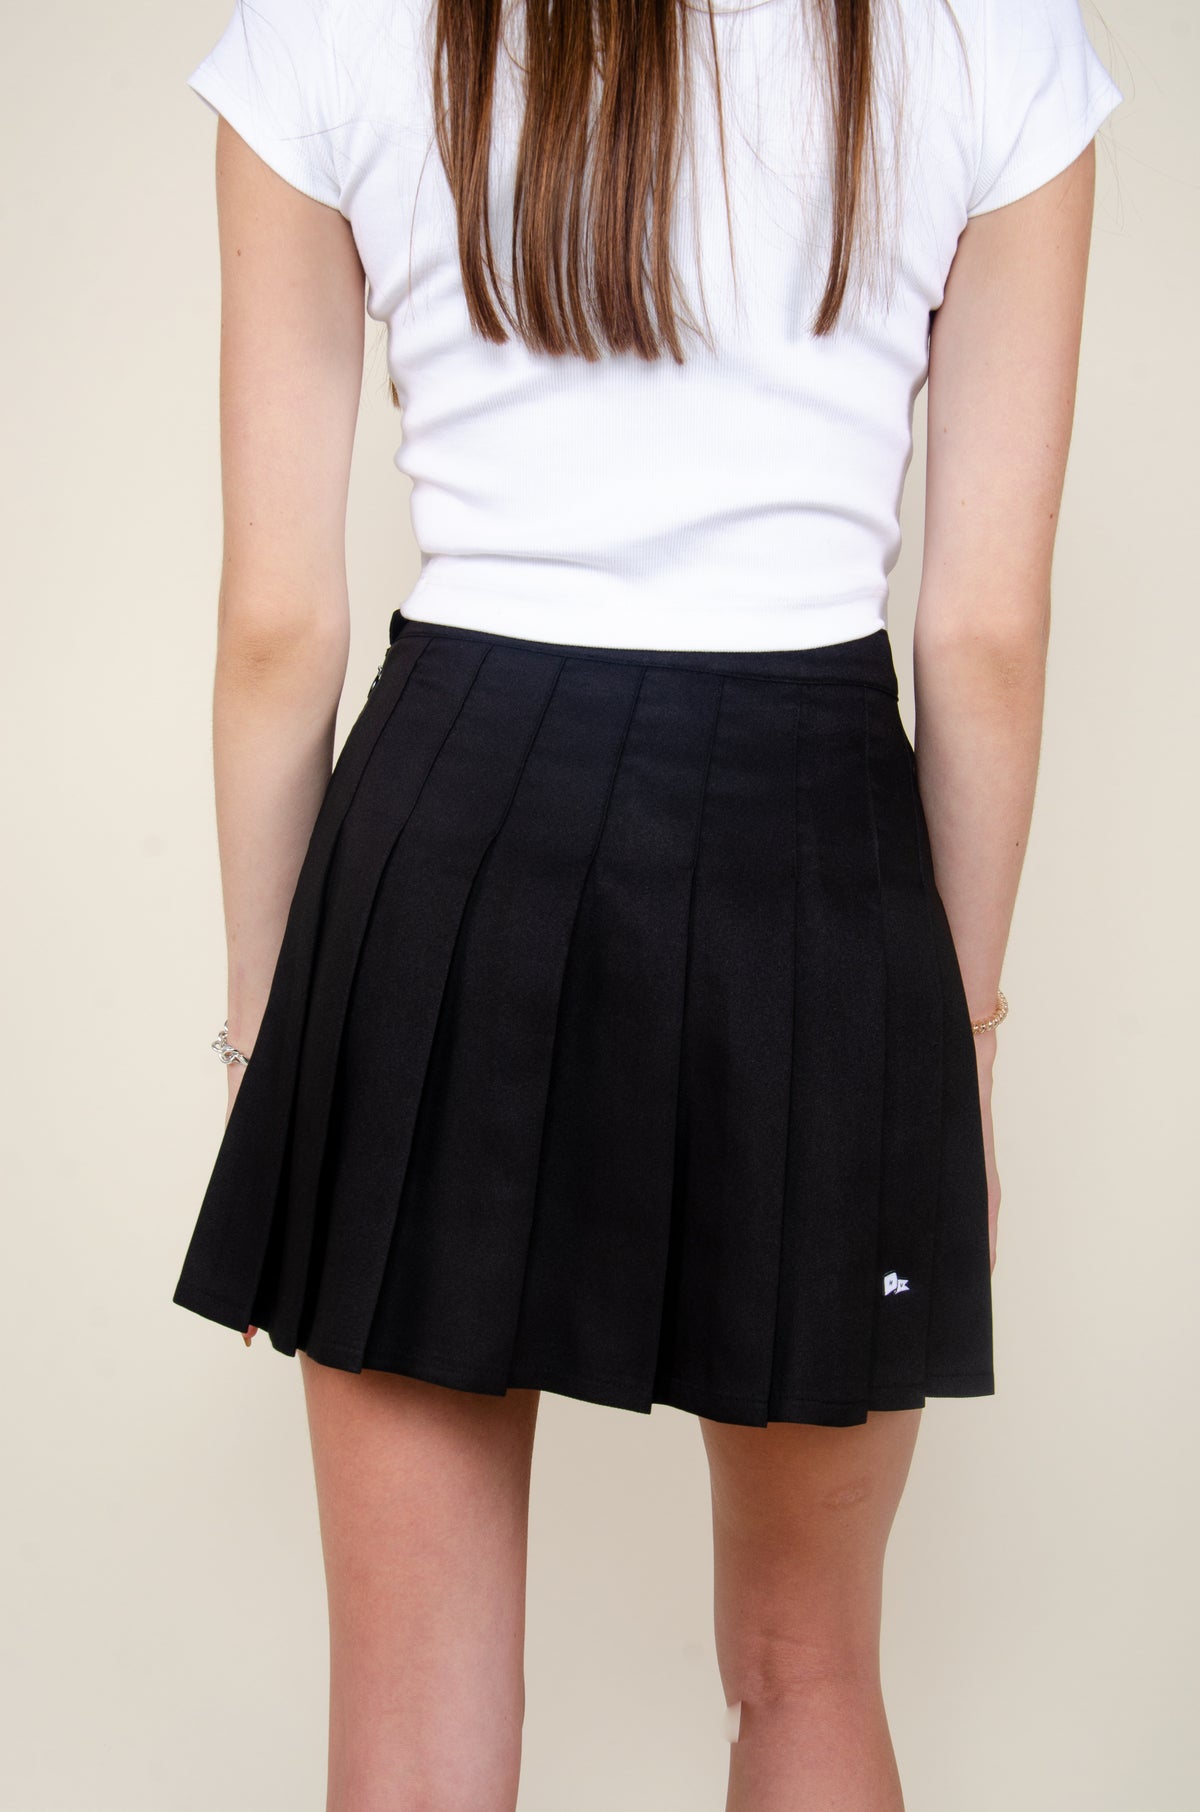 CMU Tennis Skirt